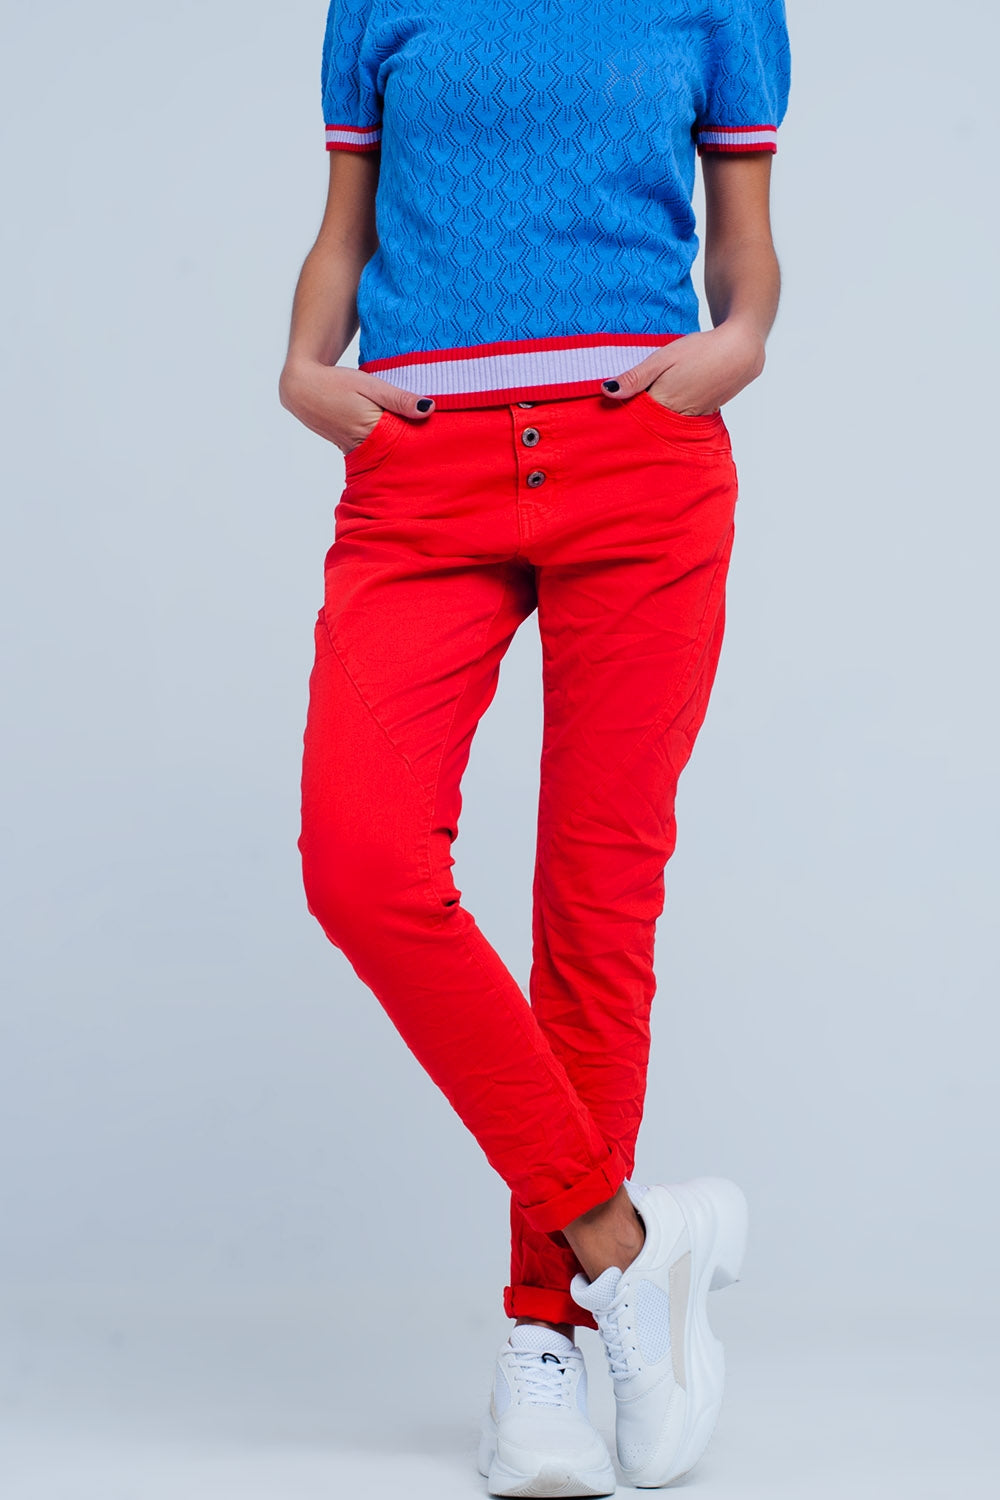 Q2 Boyfriend jeans Colore rosso a vita bassa